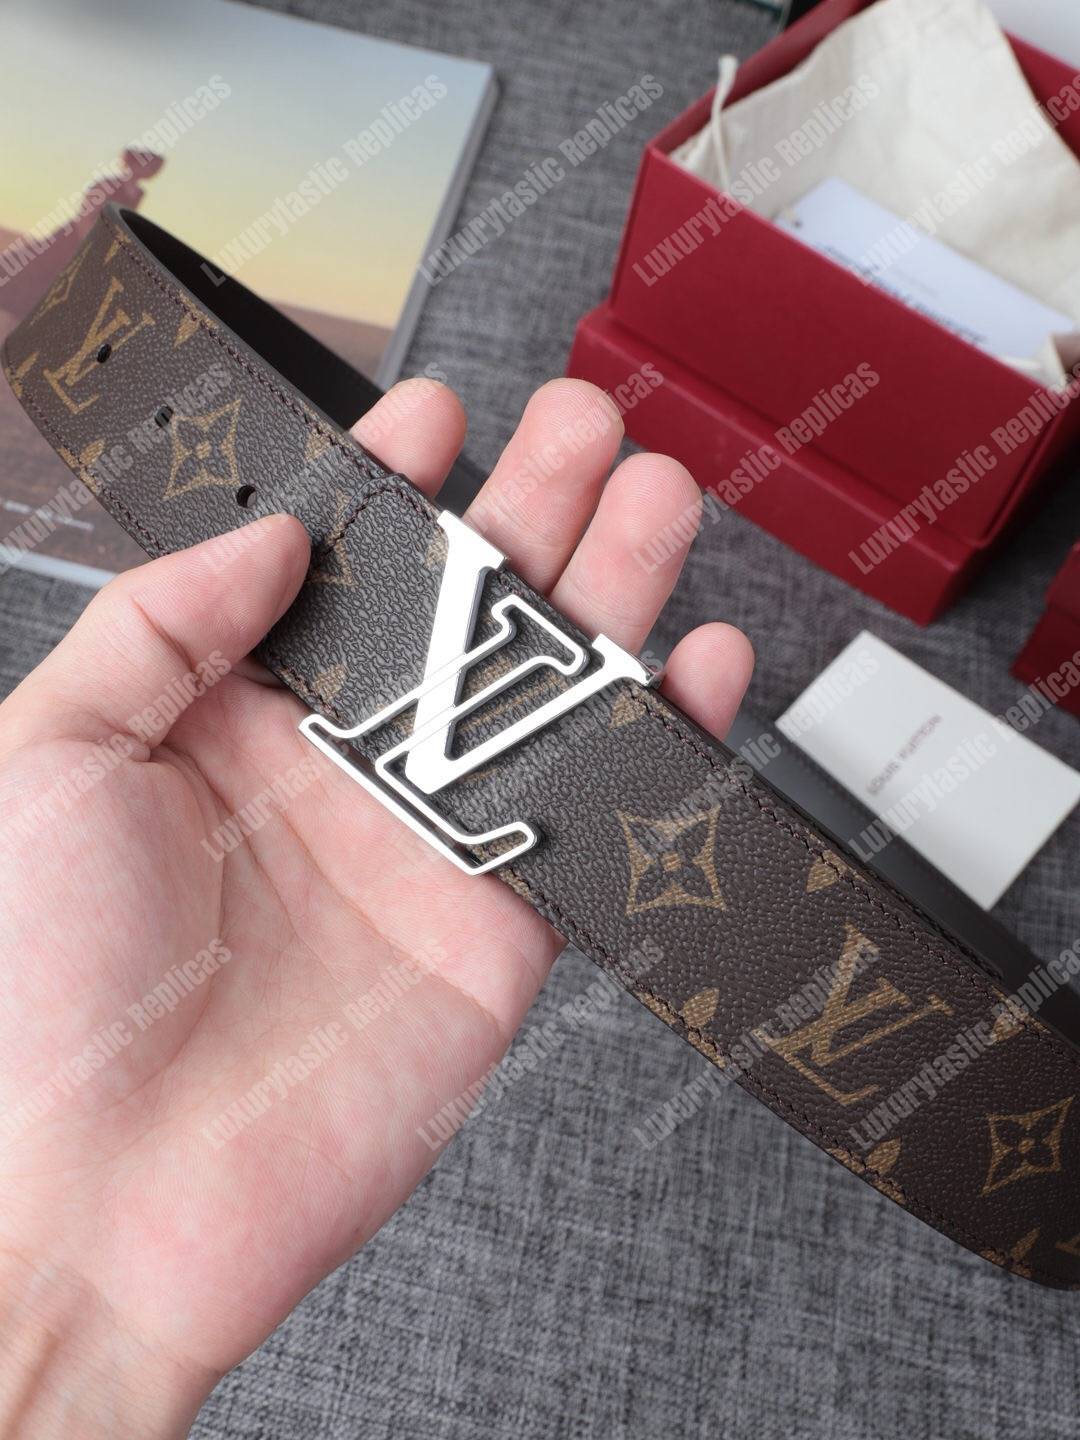 Louis Vuitton LV Line 40mm Reversible Belt Grey Monogram Canvas. Size 100 cm